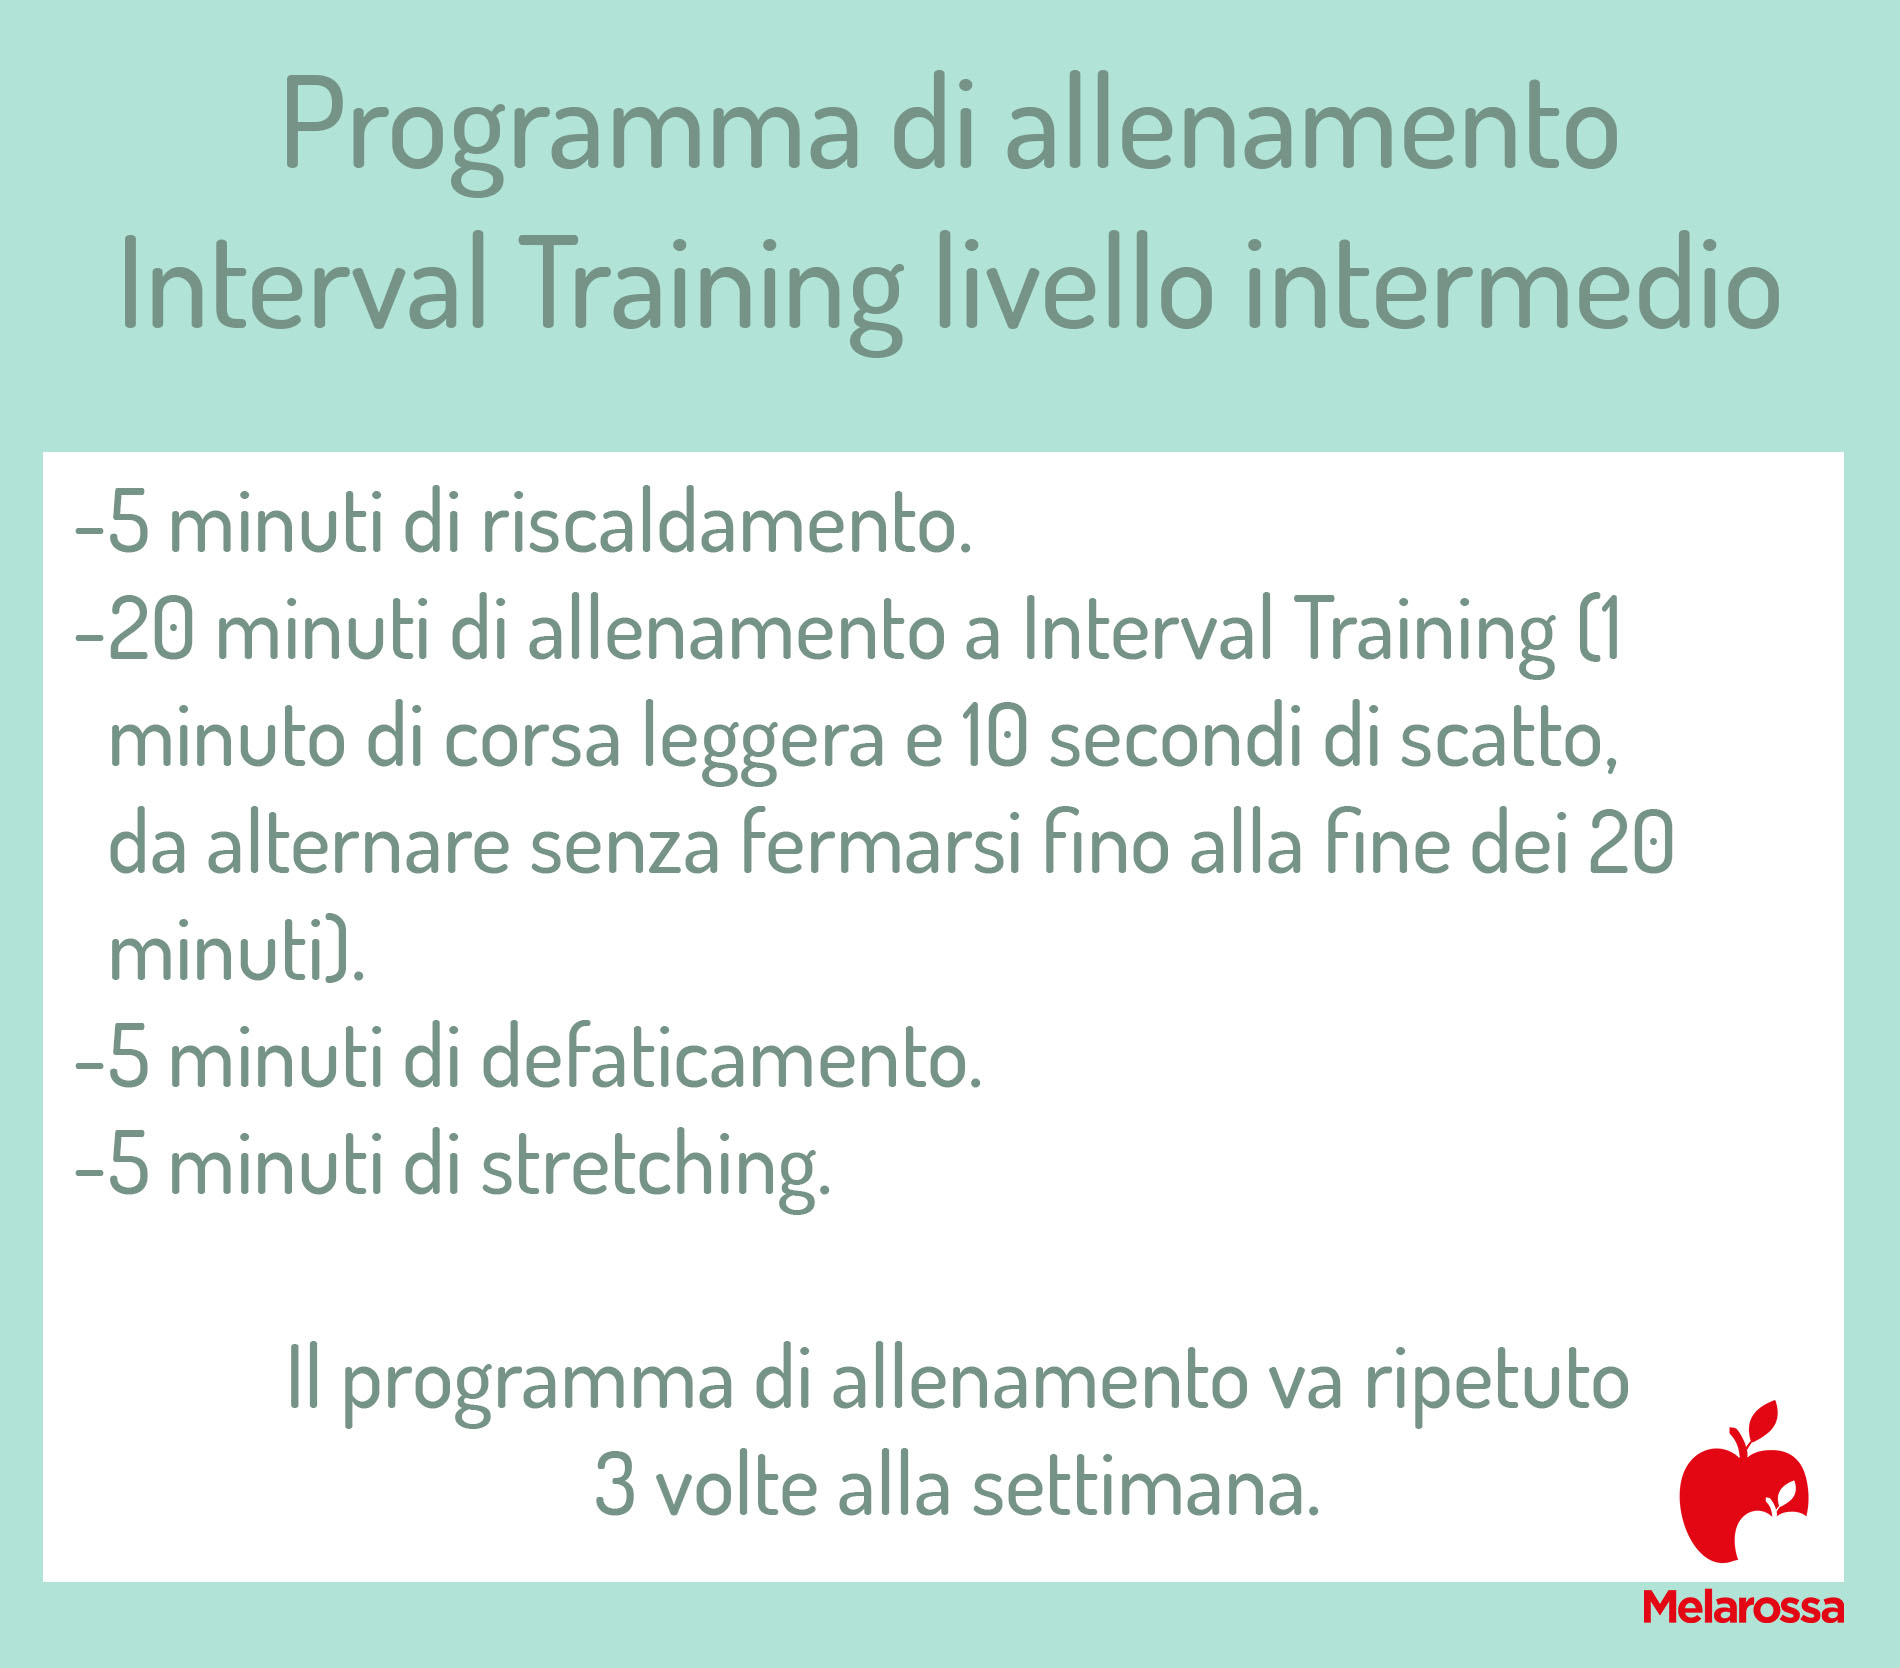 allenamento brucia grassi ad interval training: programma, livello intermedio